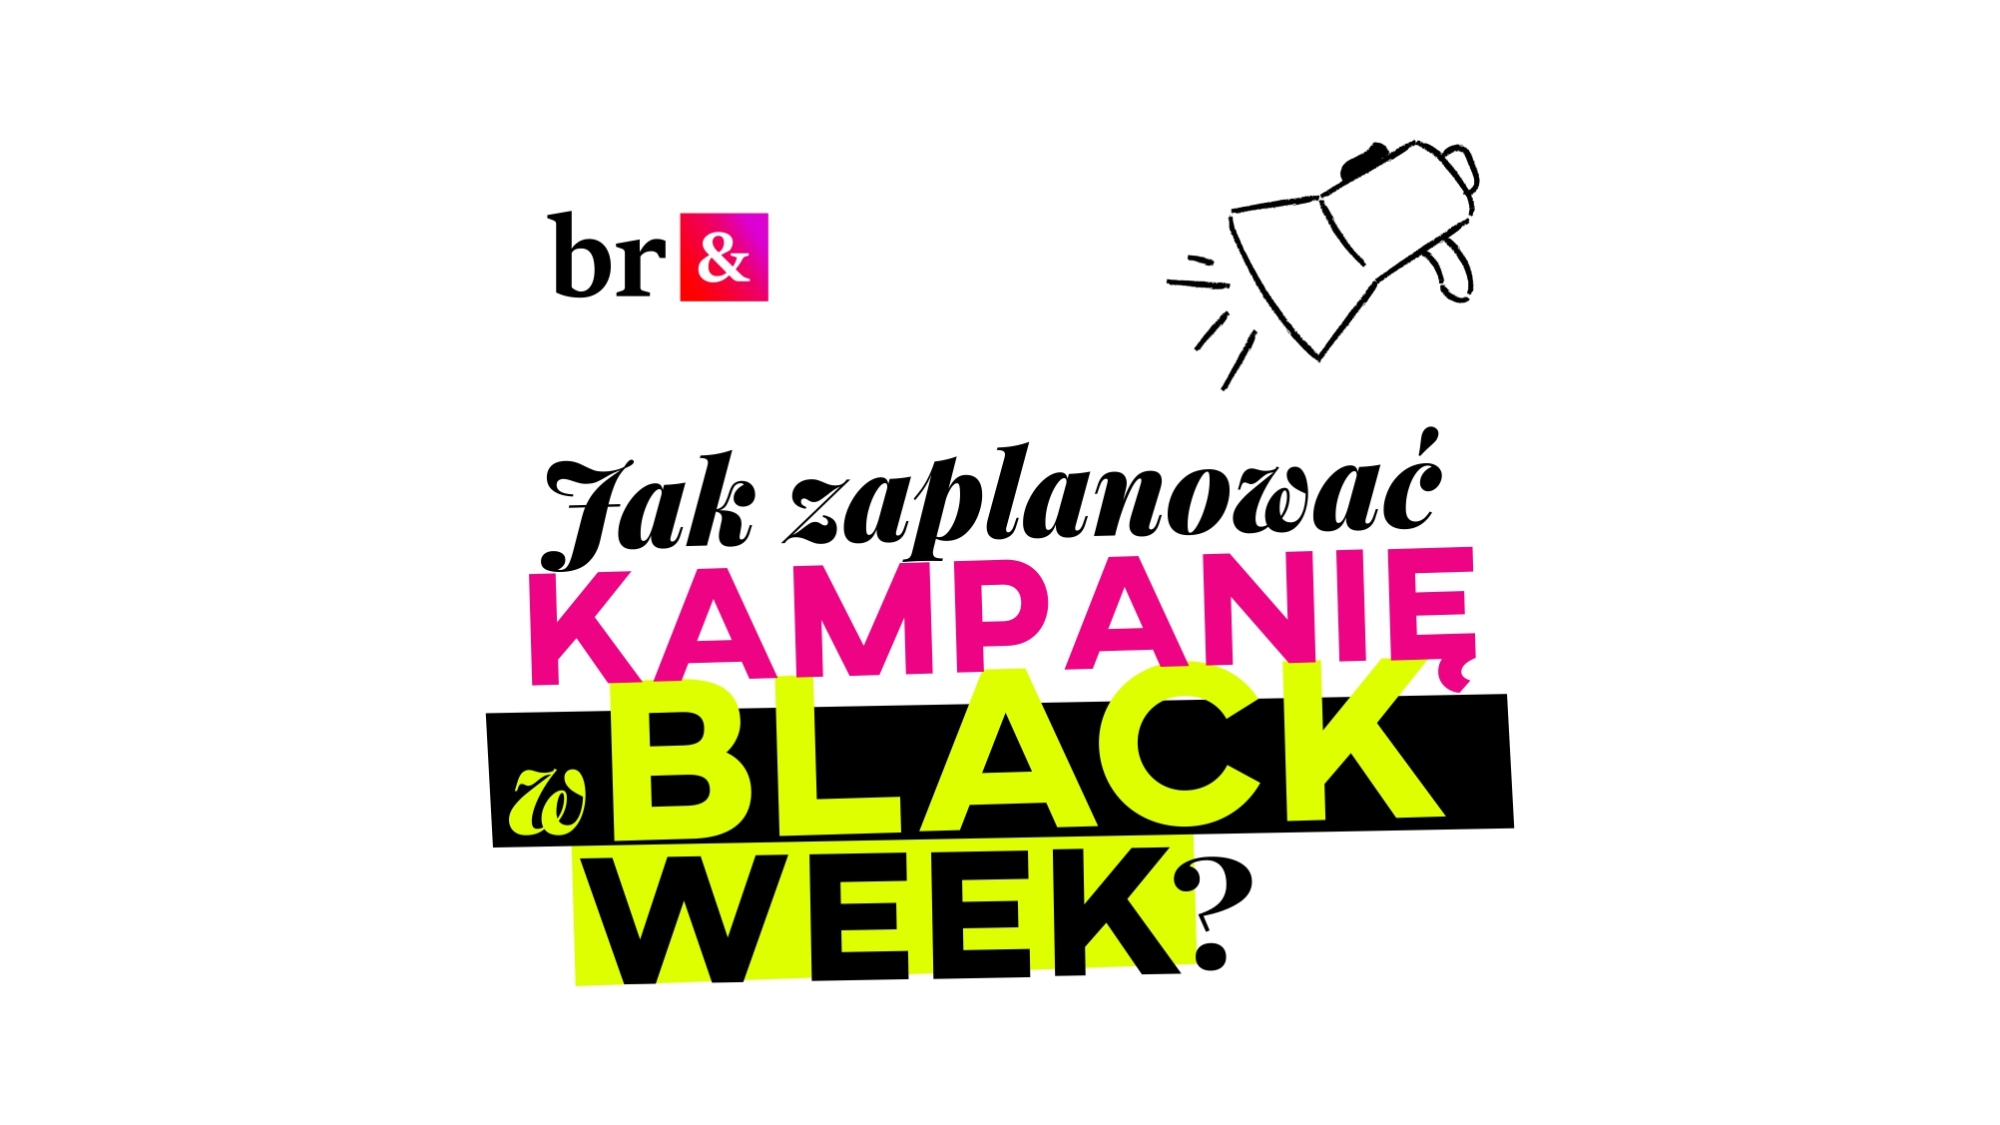 zastanawiasz się jeszcze nad kampanią BLACK week?